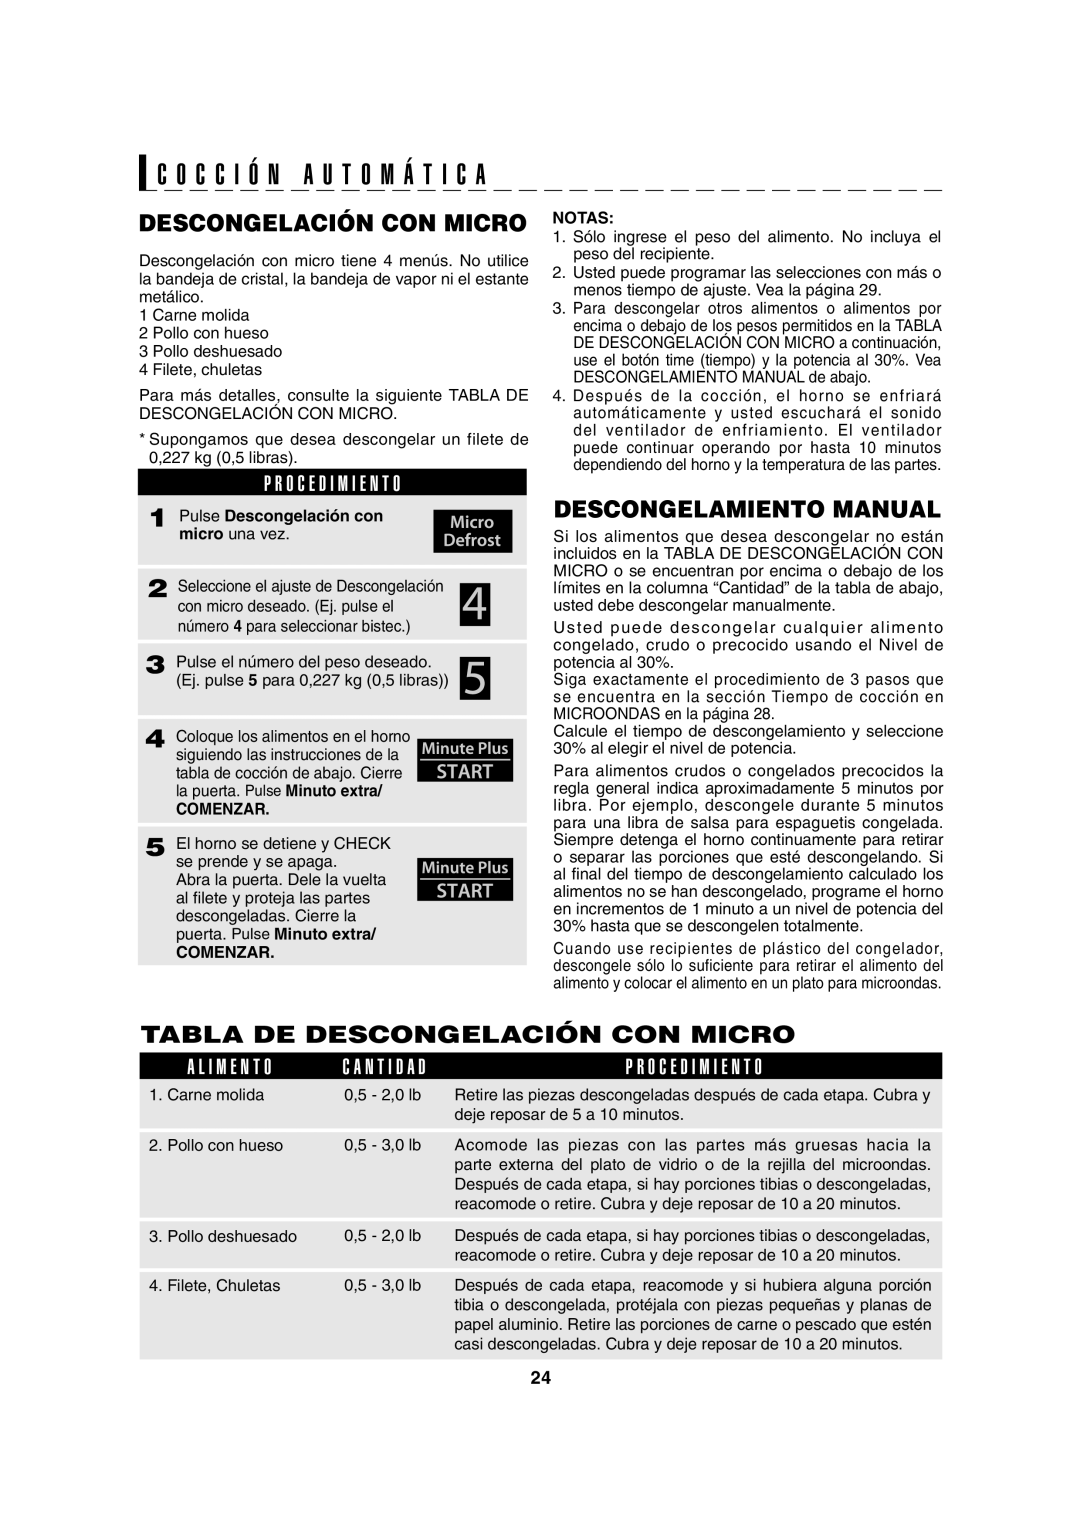 Sharp AX-1100S Descongelamiento Manual, Tabla De Descongelación Con Micro, C O C C I Ó N A U T O M Á T I C A, Comenzar 